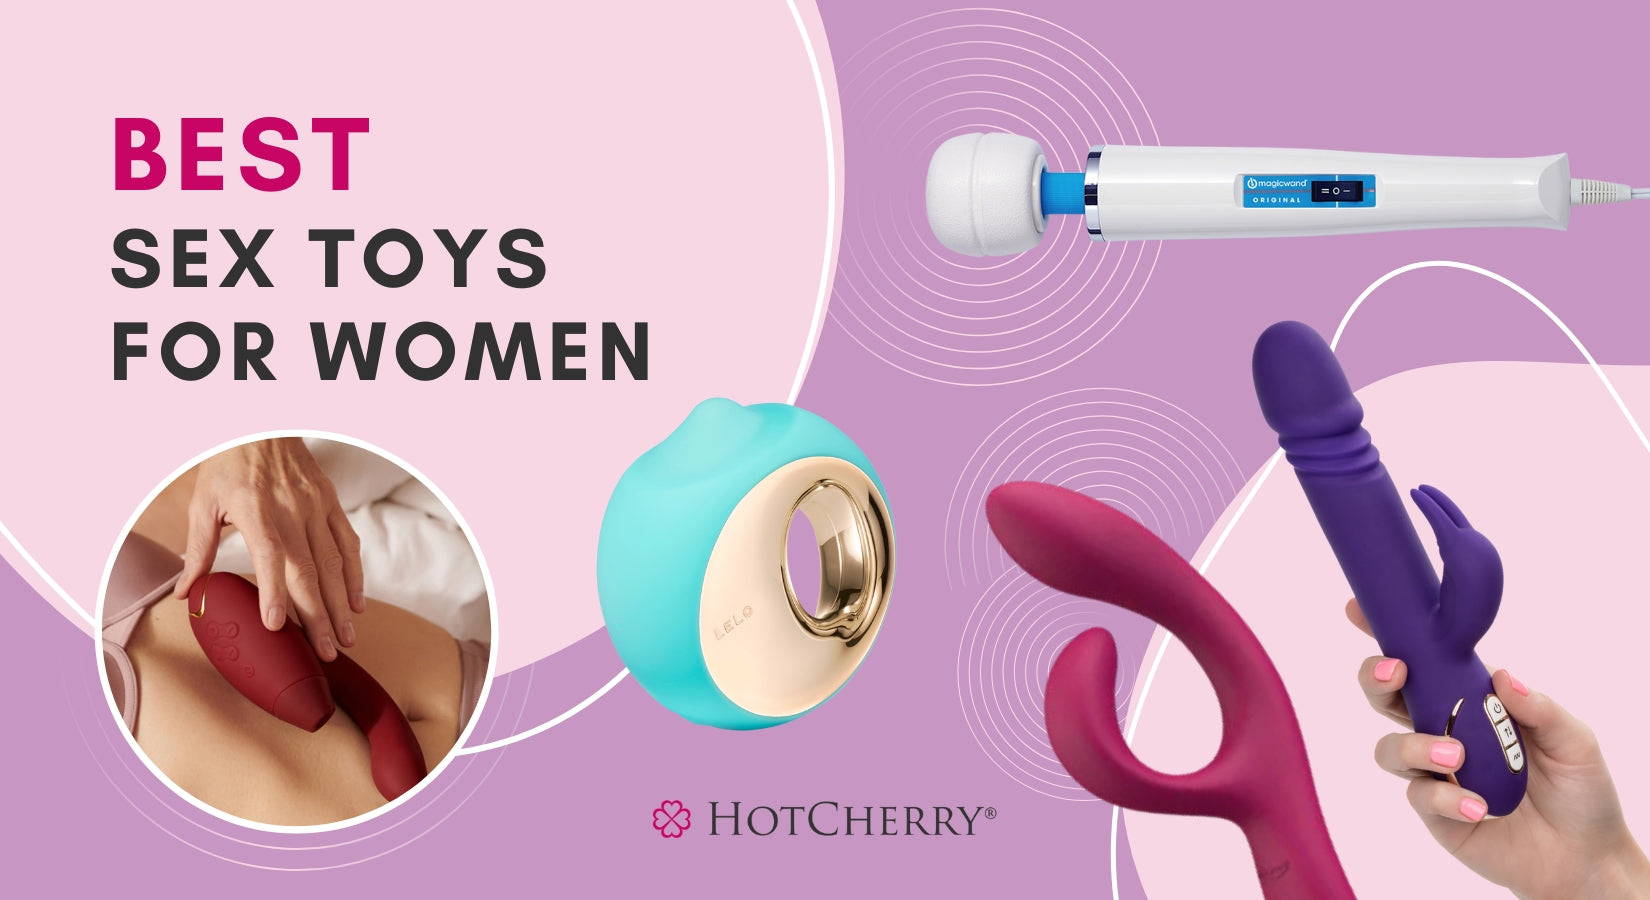 https://hotcherry.com/blogs/news/best-sex-toys-for-women